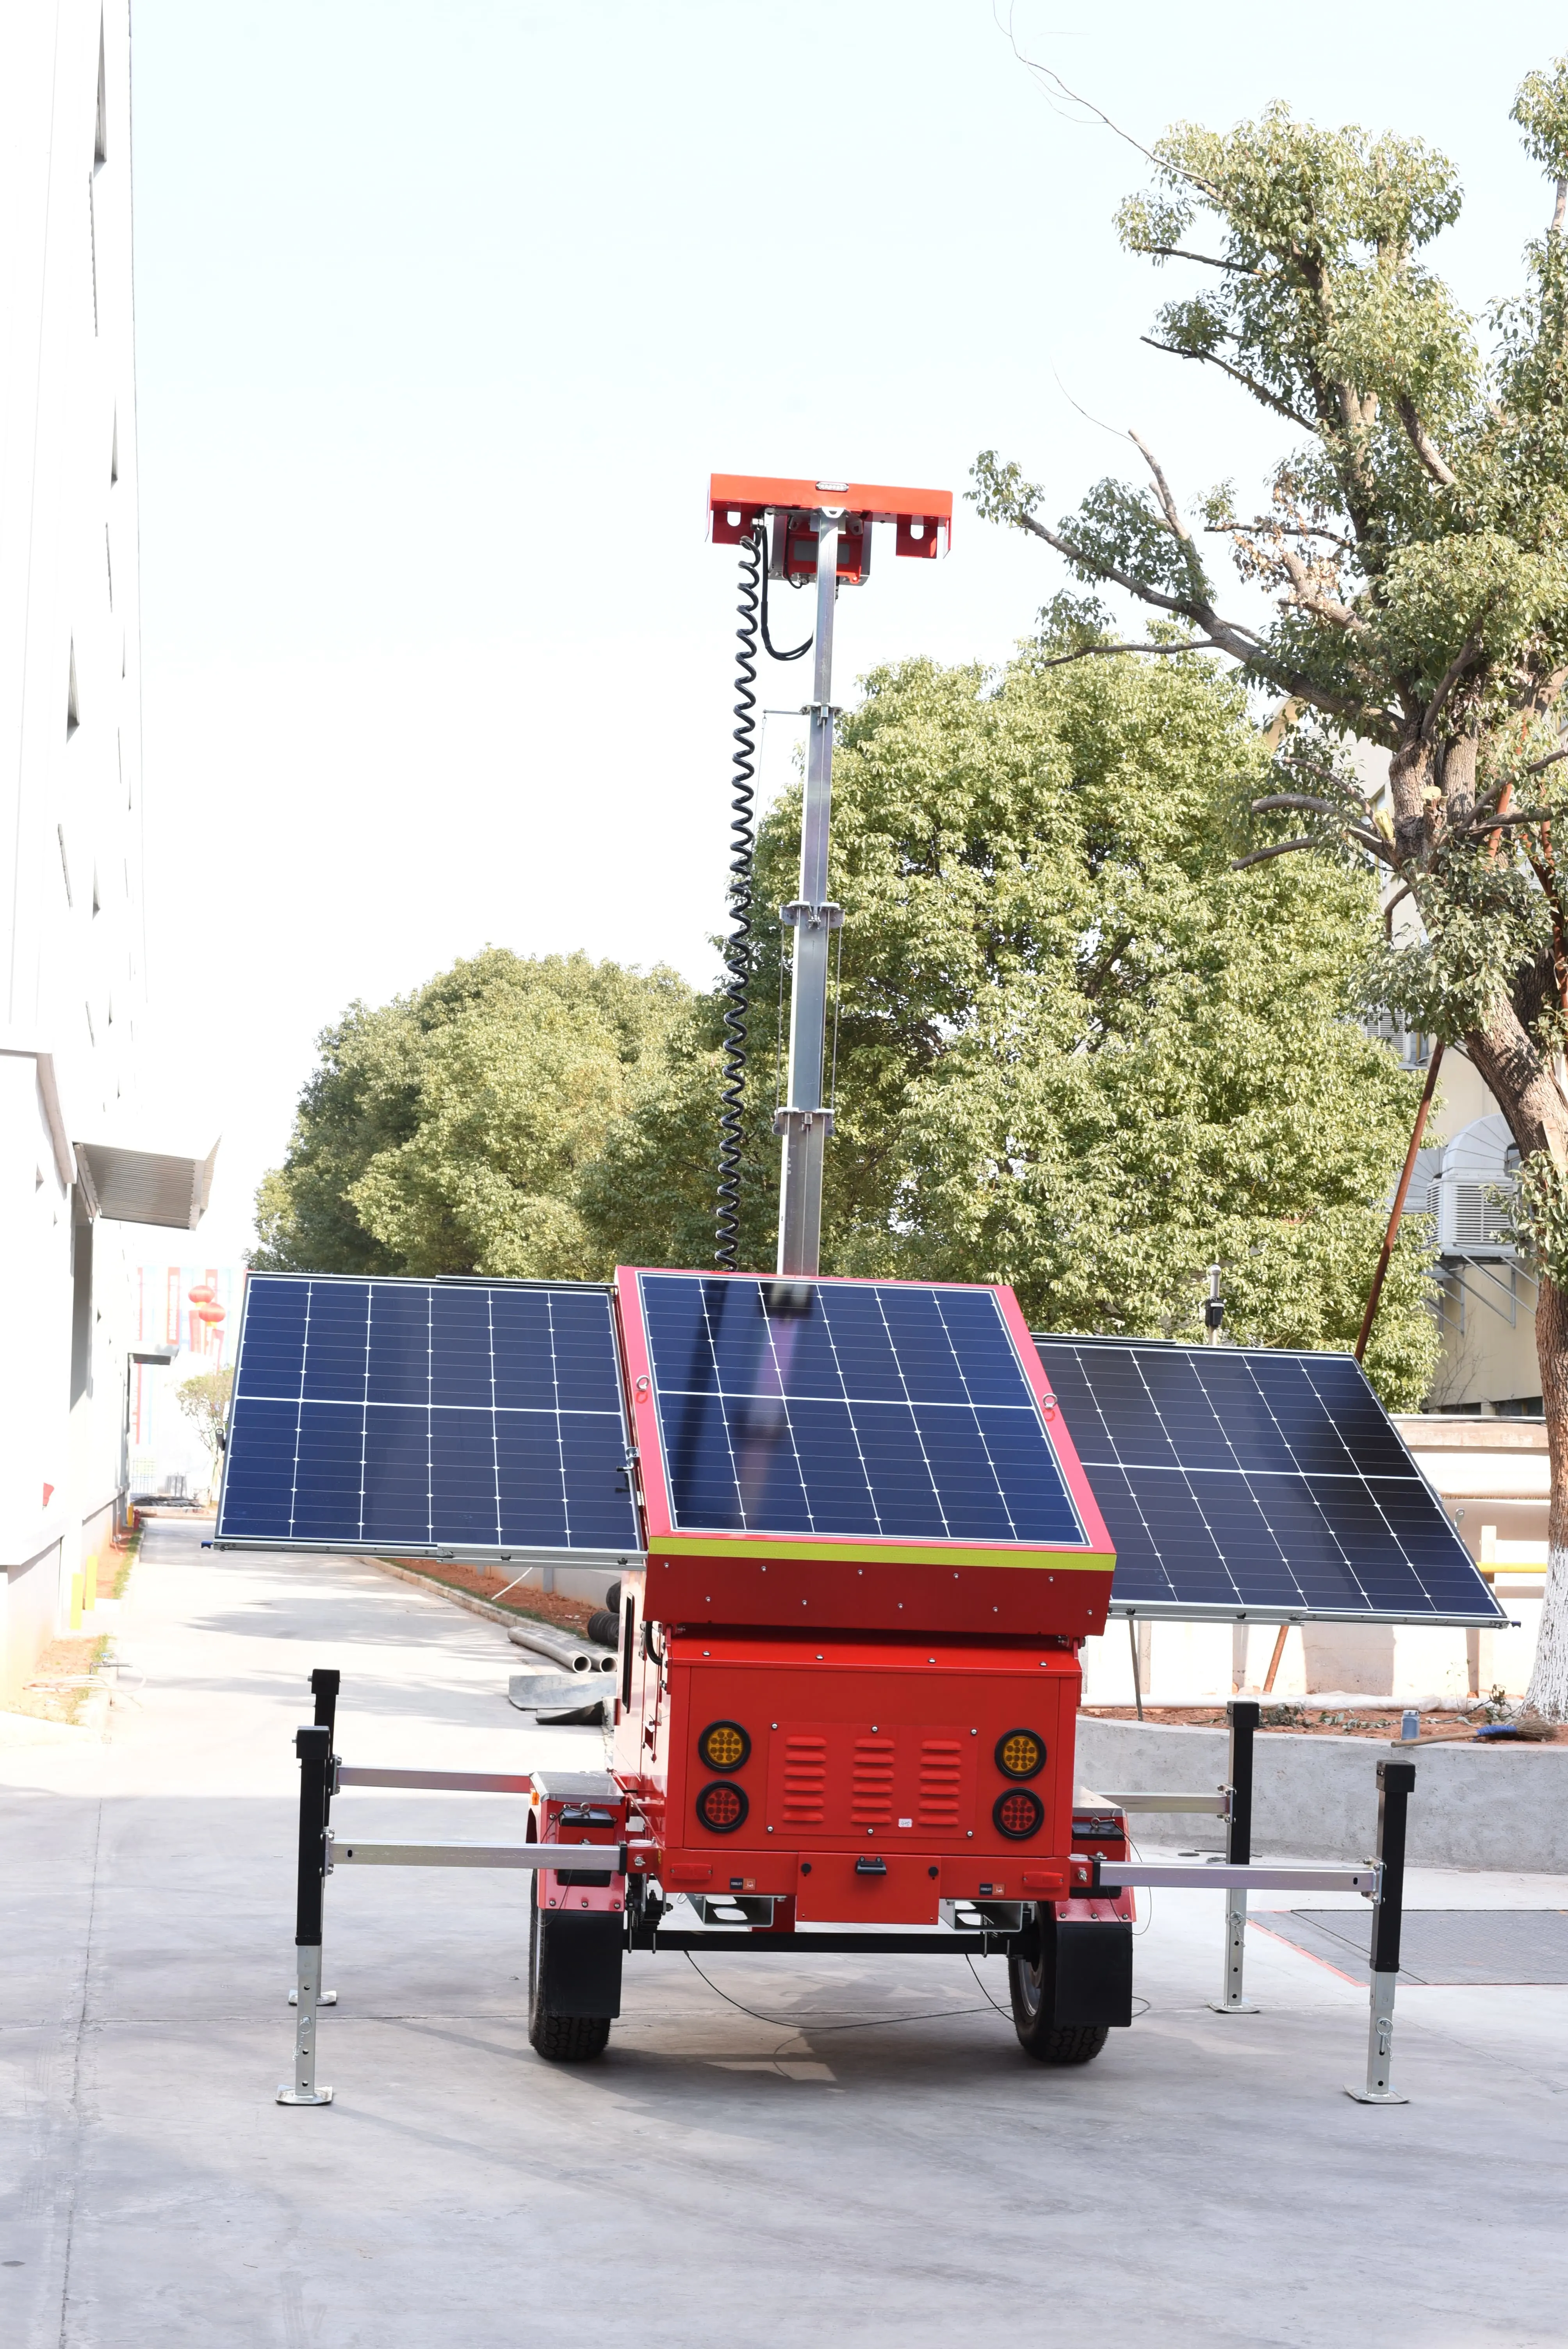 BIGLUX मोबाइल सीसीटीवी टावर फोन से कनेक्ट होता है मोबाइल सौर ऊर्जा चालित निगरानी इकाइयां कैमरा ट्रेलर घुड़सवार निगरानी प्रणाली।